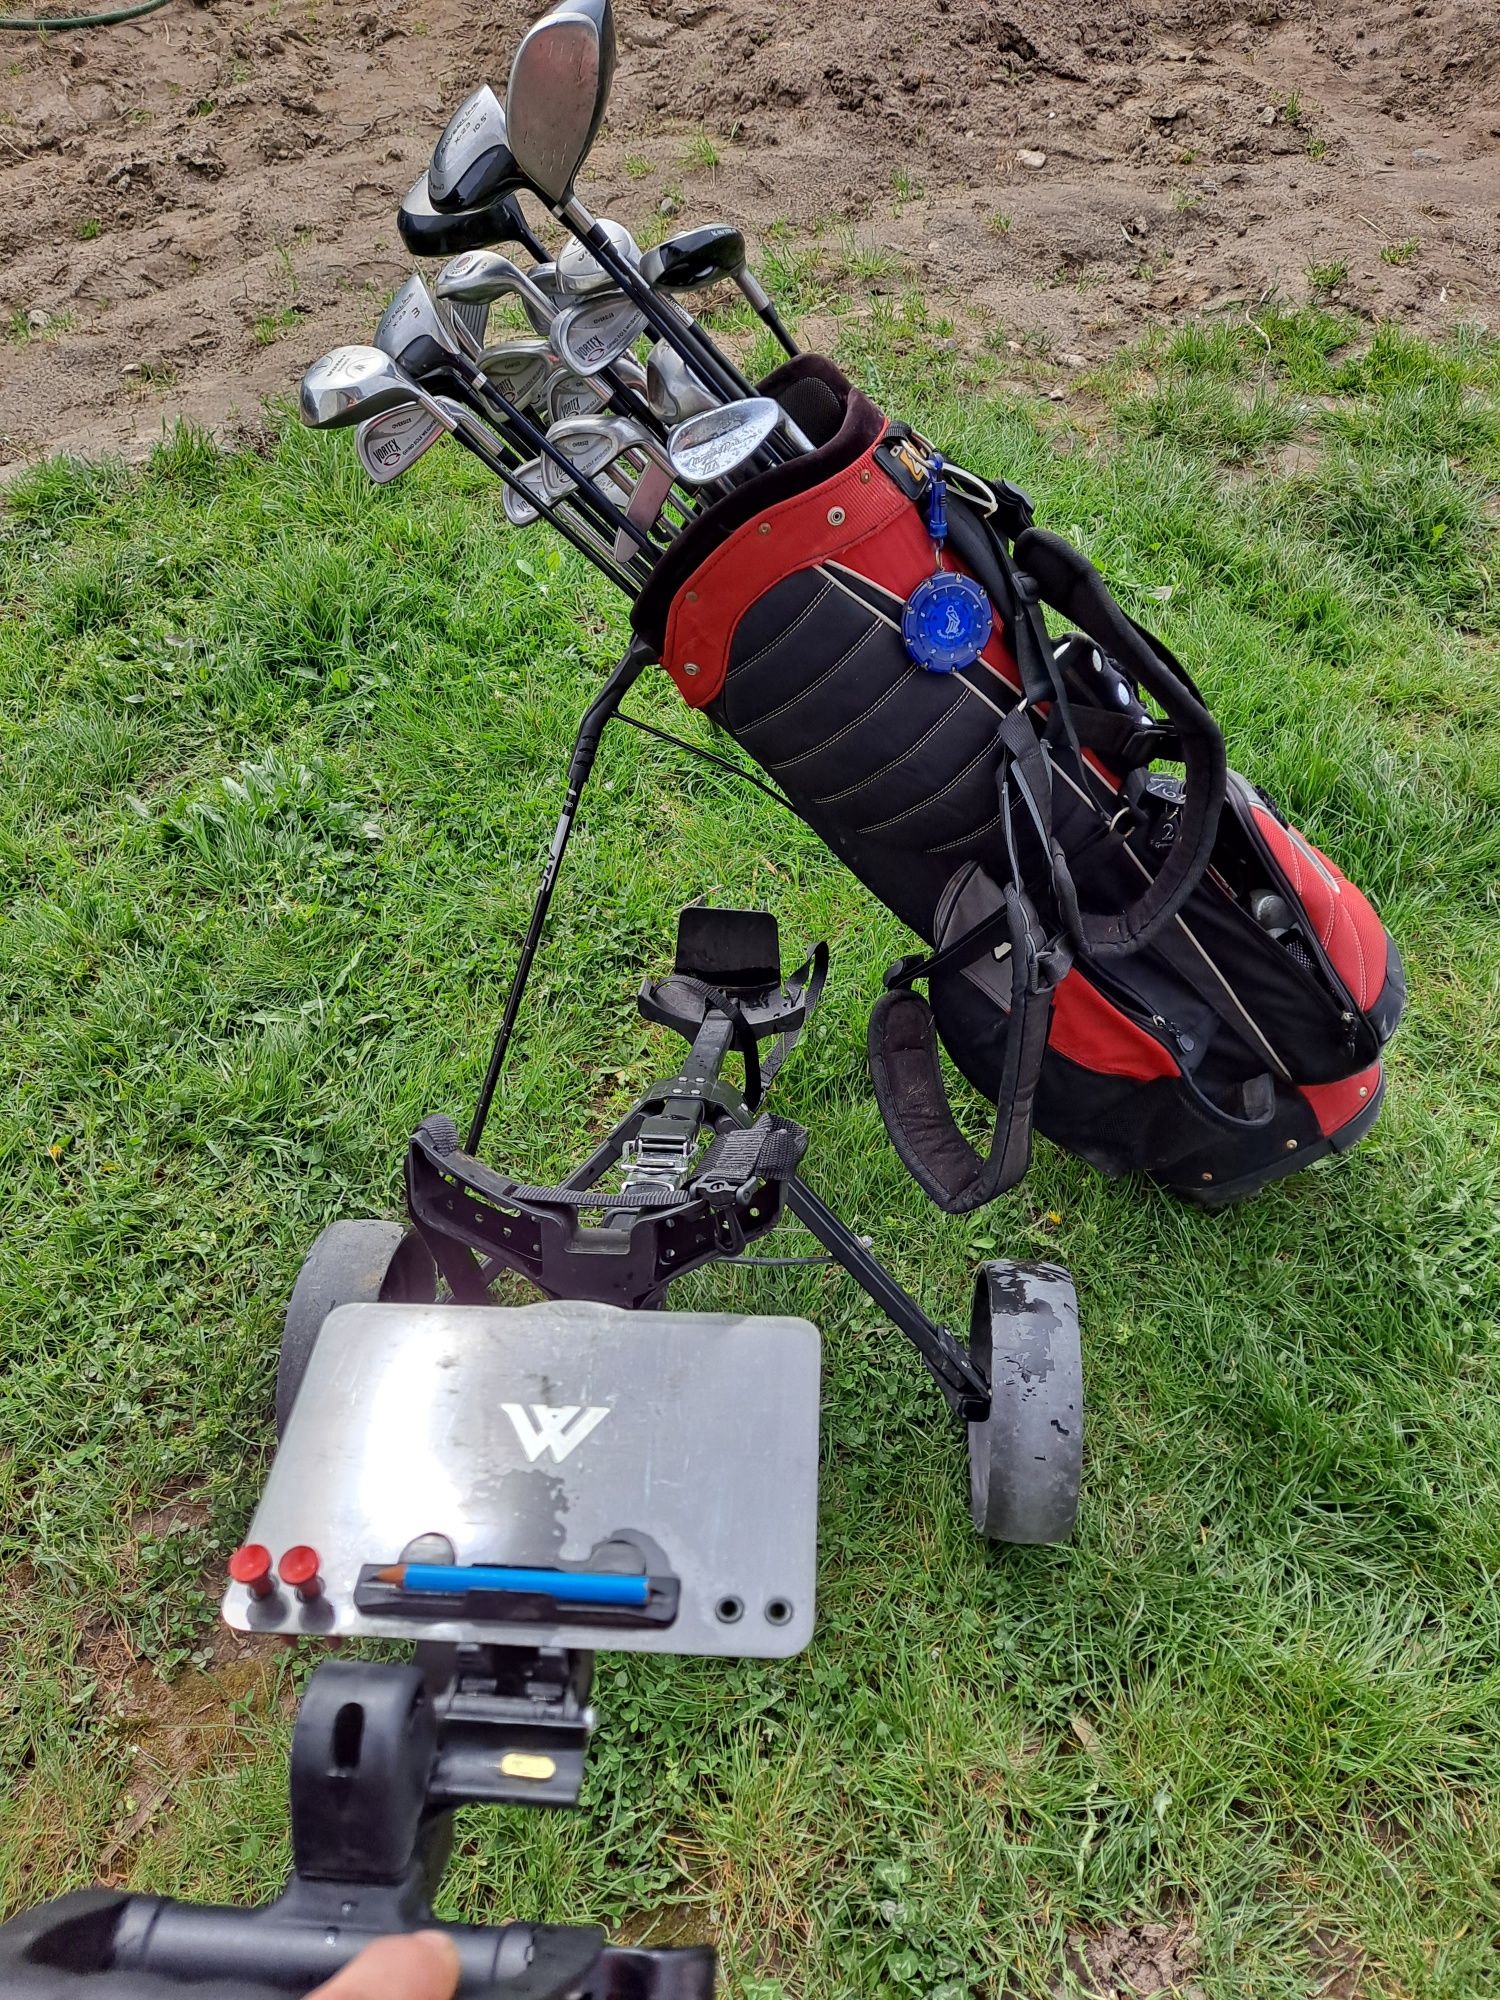 Zestaw do golfa torba kije wózek